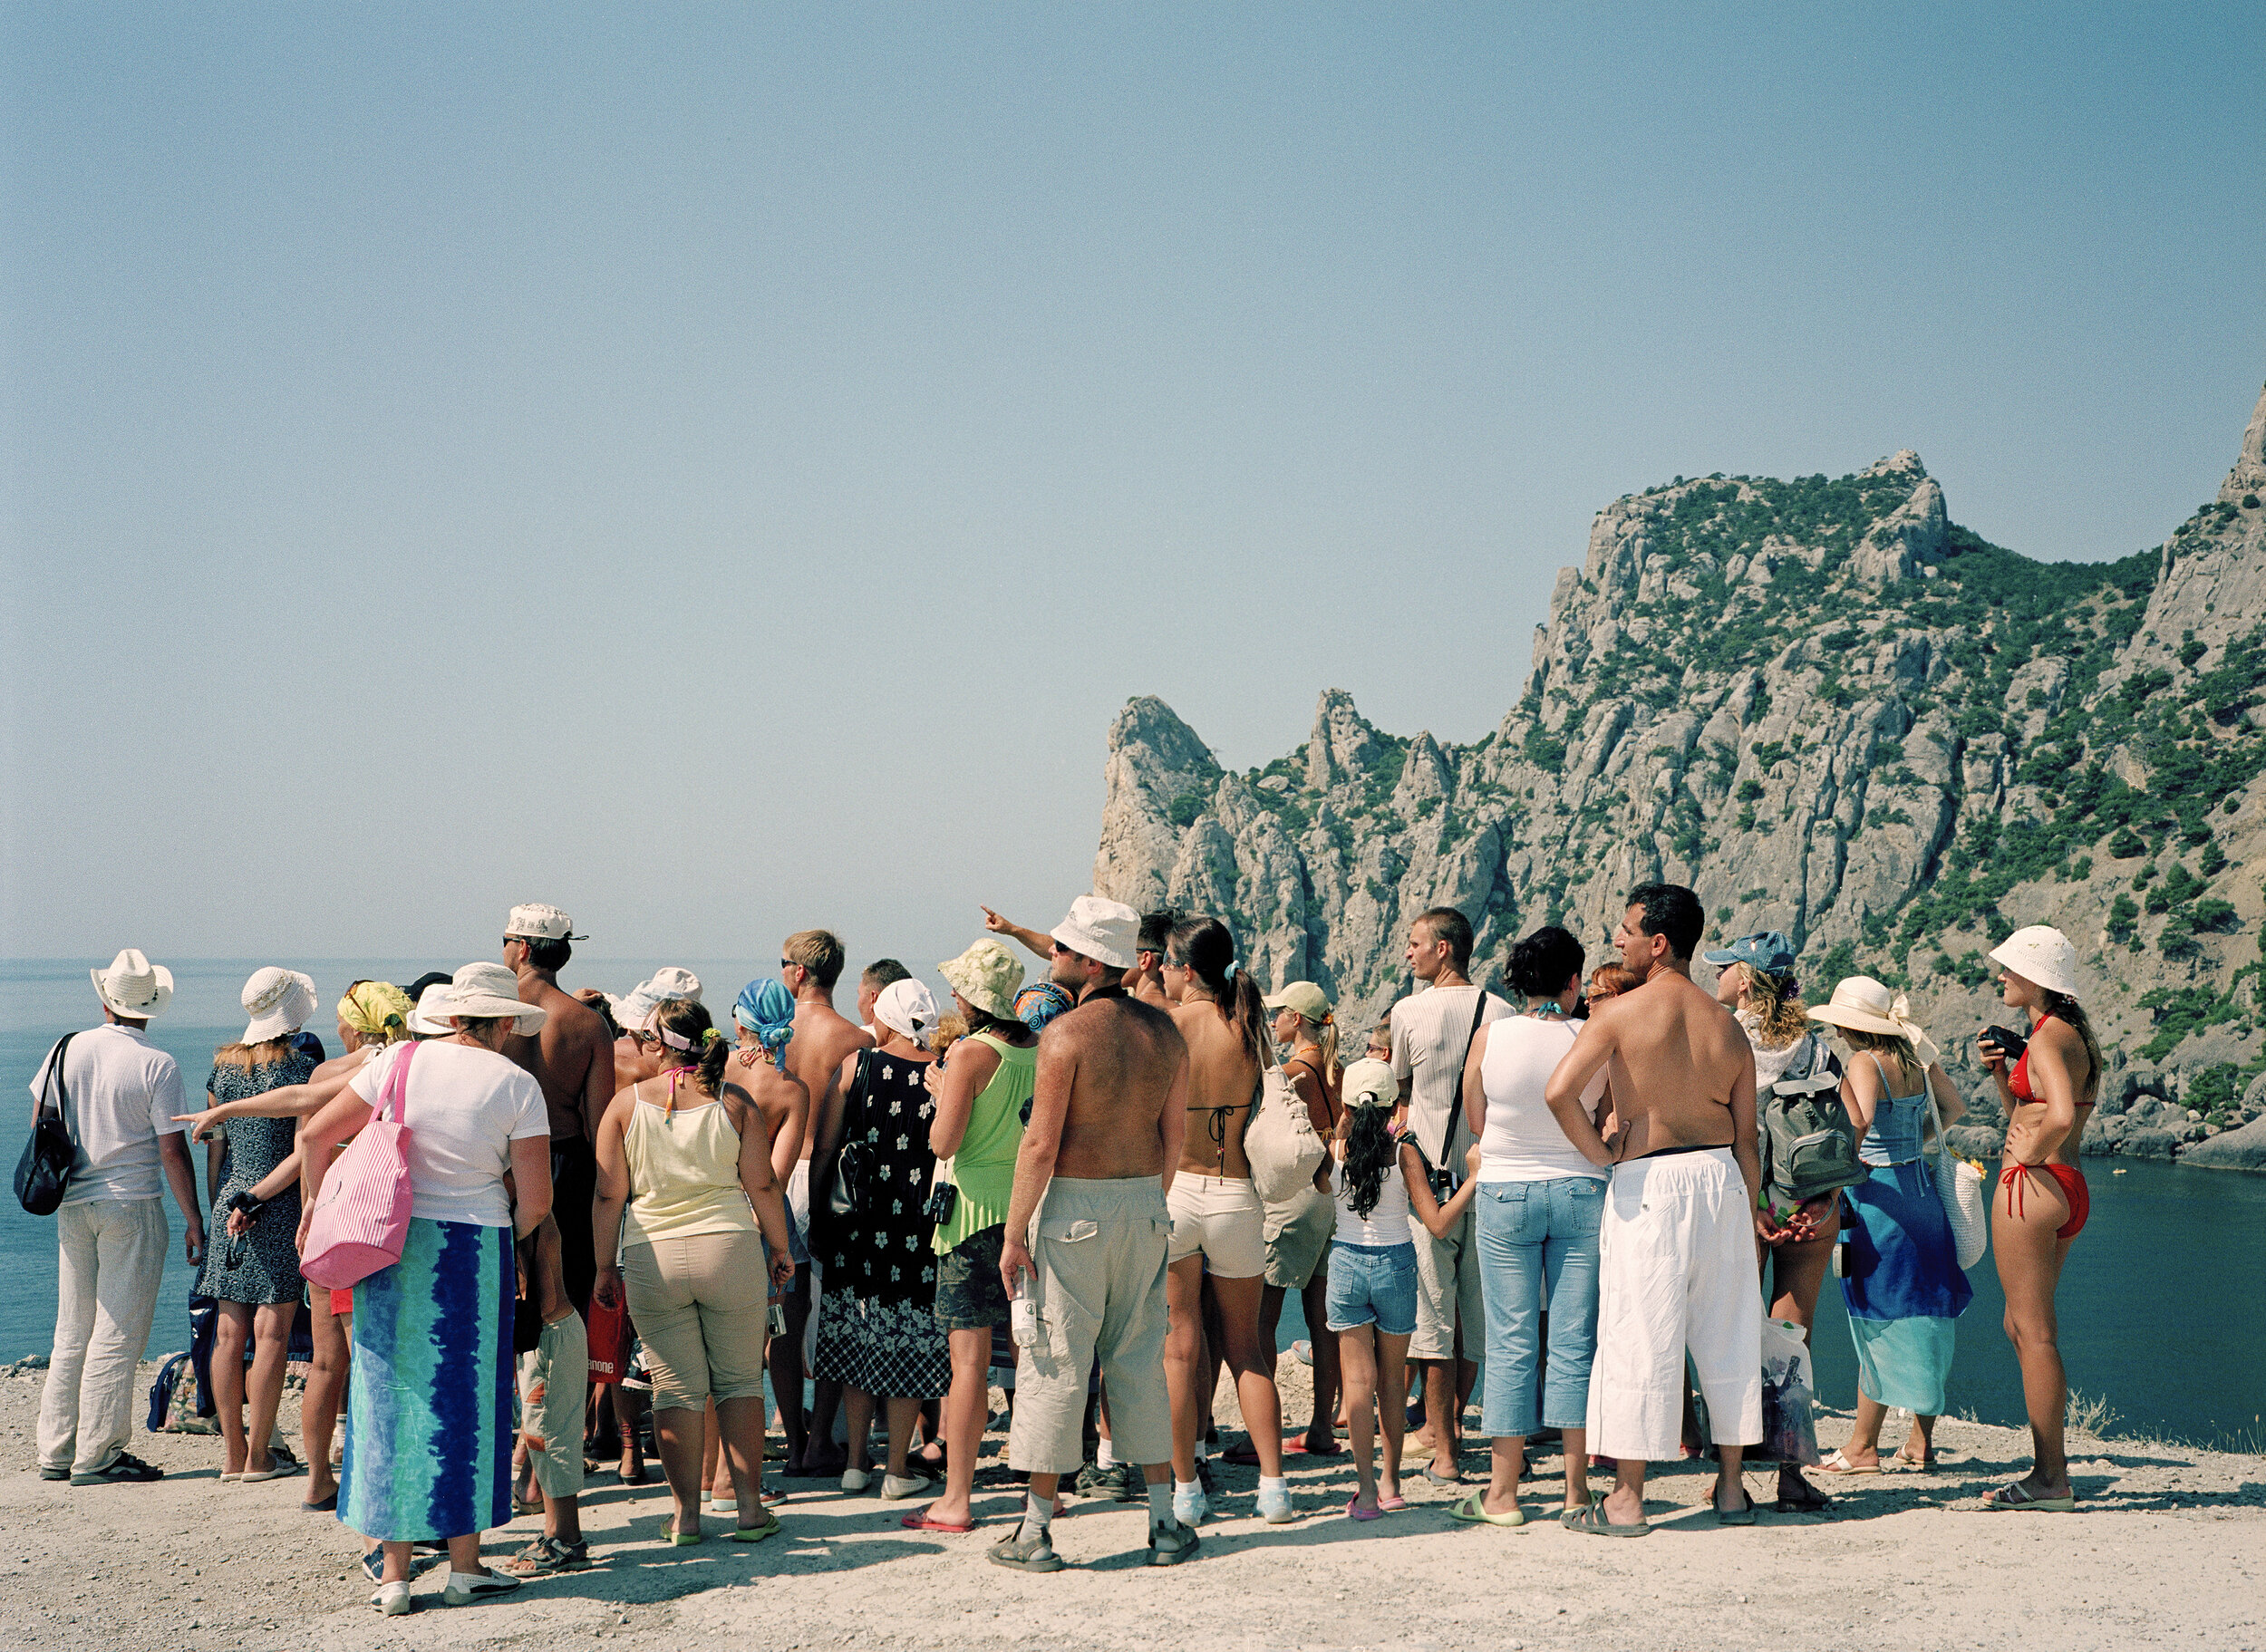  Tourists in the Crimea on the Black Sea   